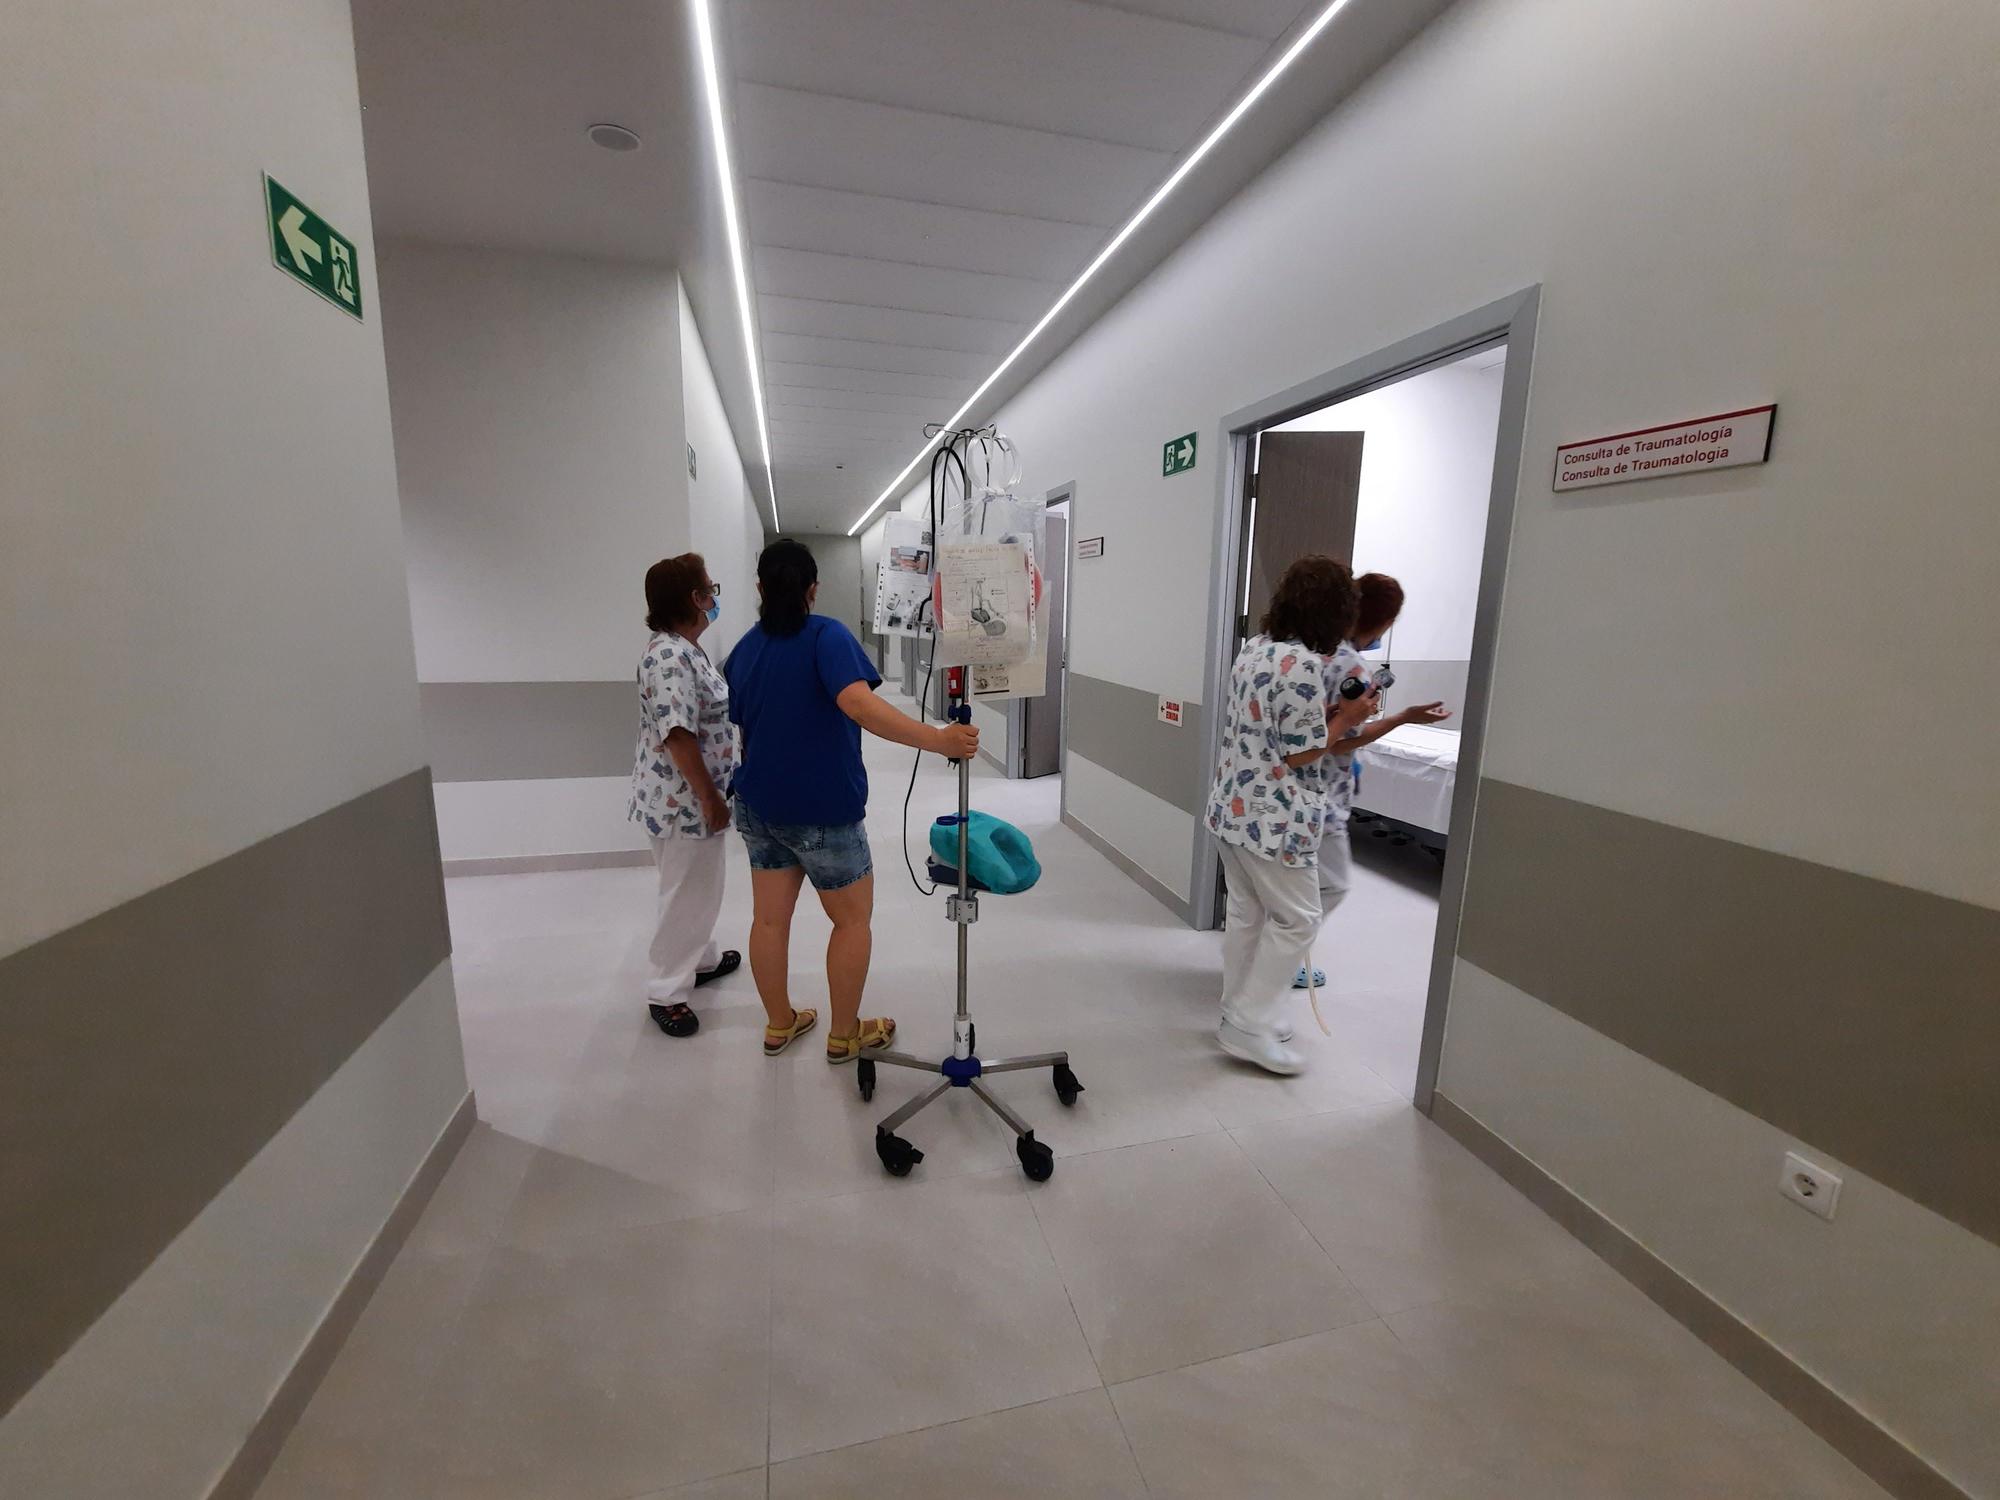 Traslado de las Urgencias pediátricas del Hospital de Alicante